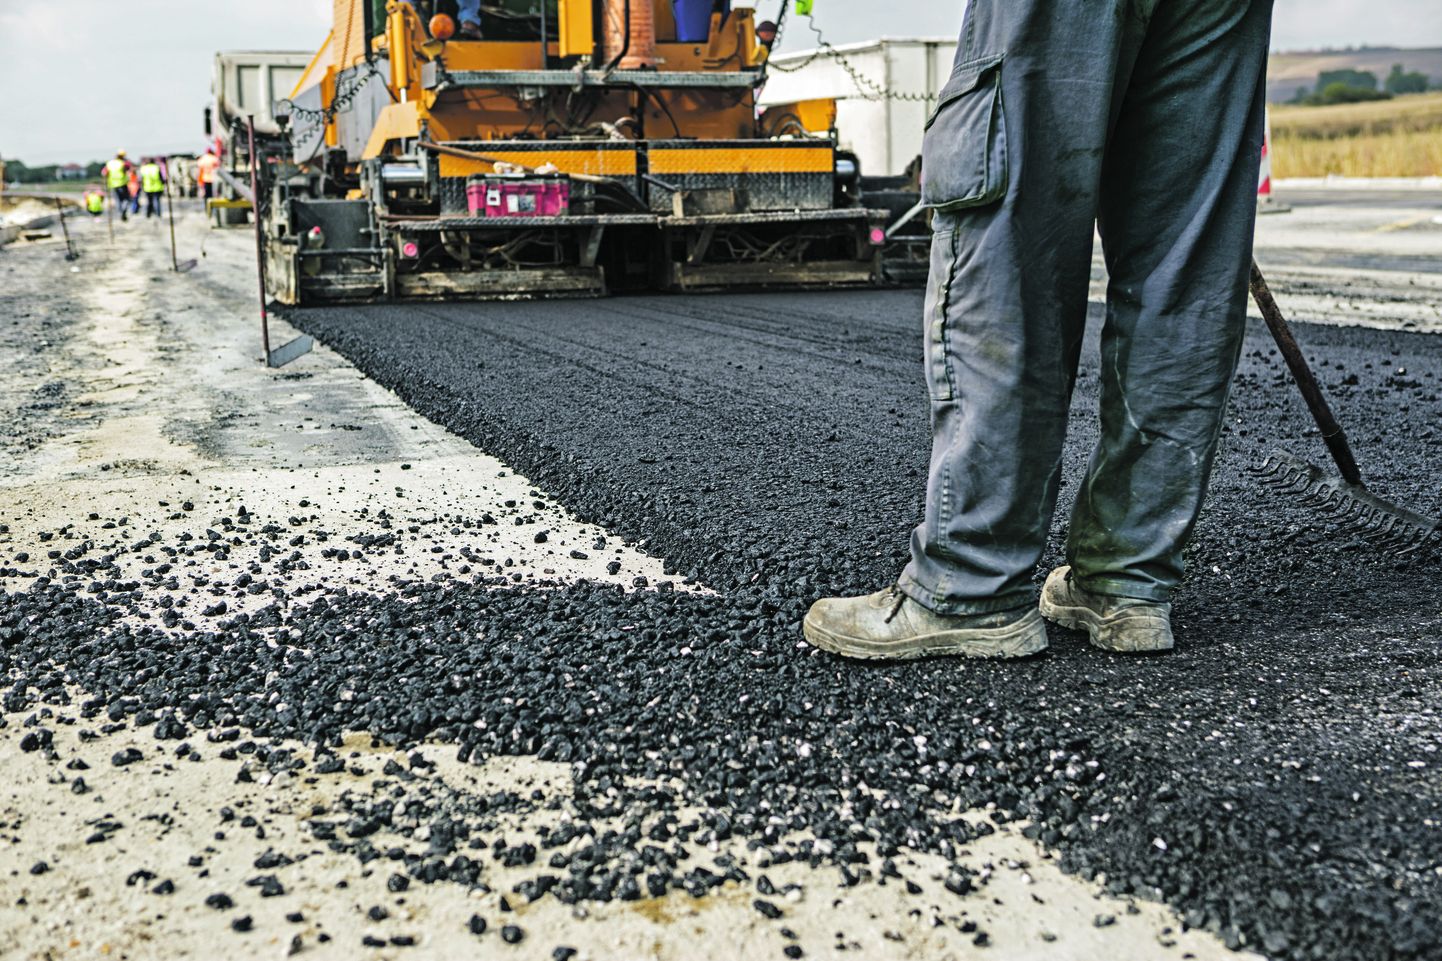 Из-за роста цен на строительные материалы откладывается реализация более 40 запланированных в начале года проектов дорожного строительства по всей Эстонии.